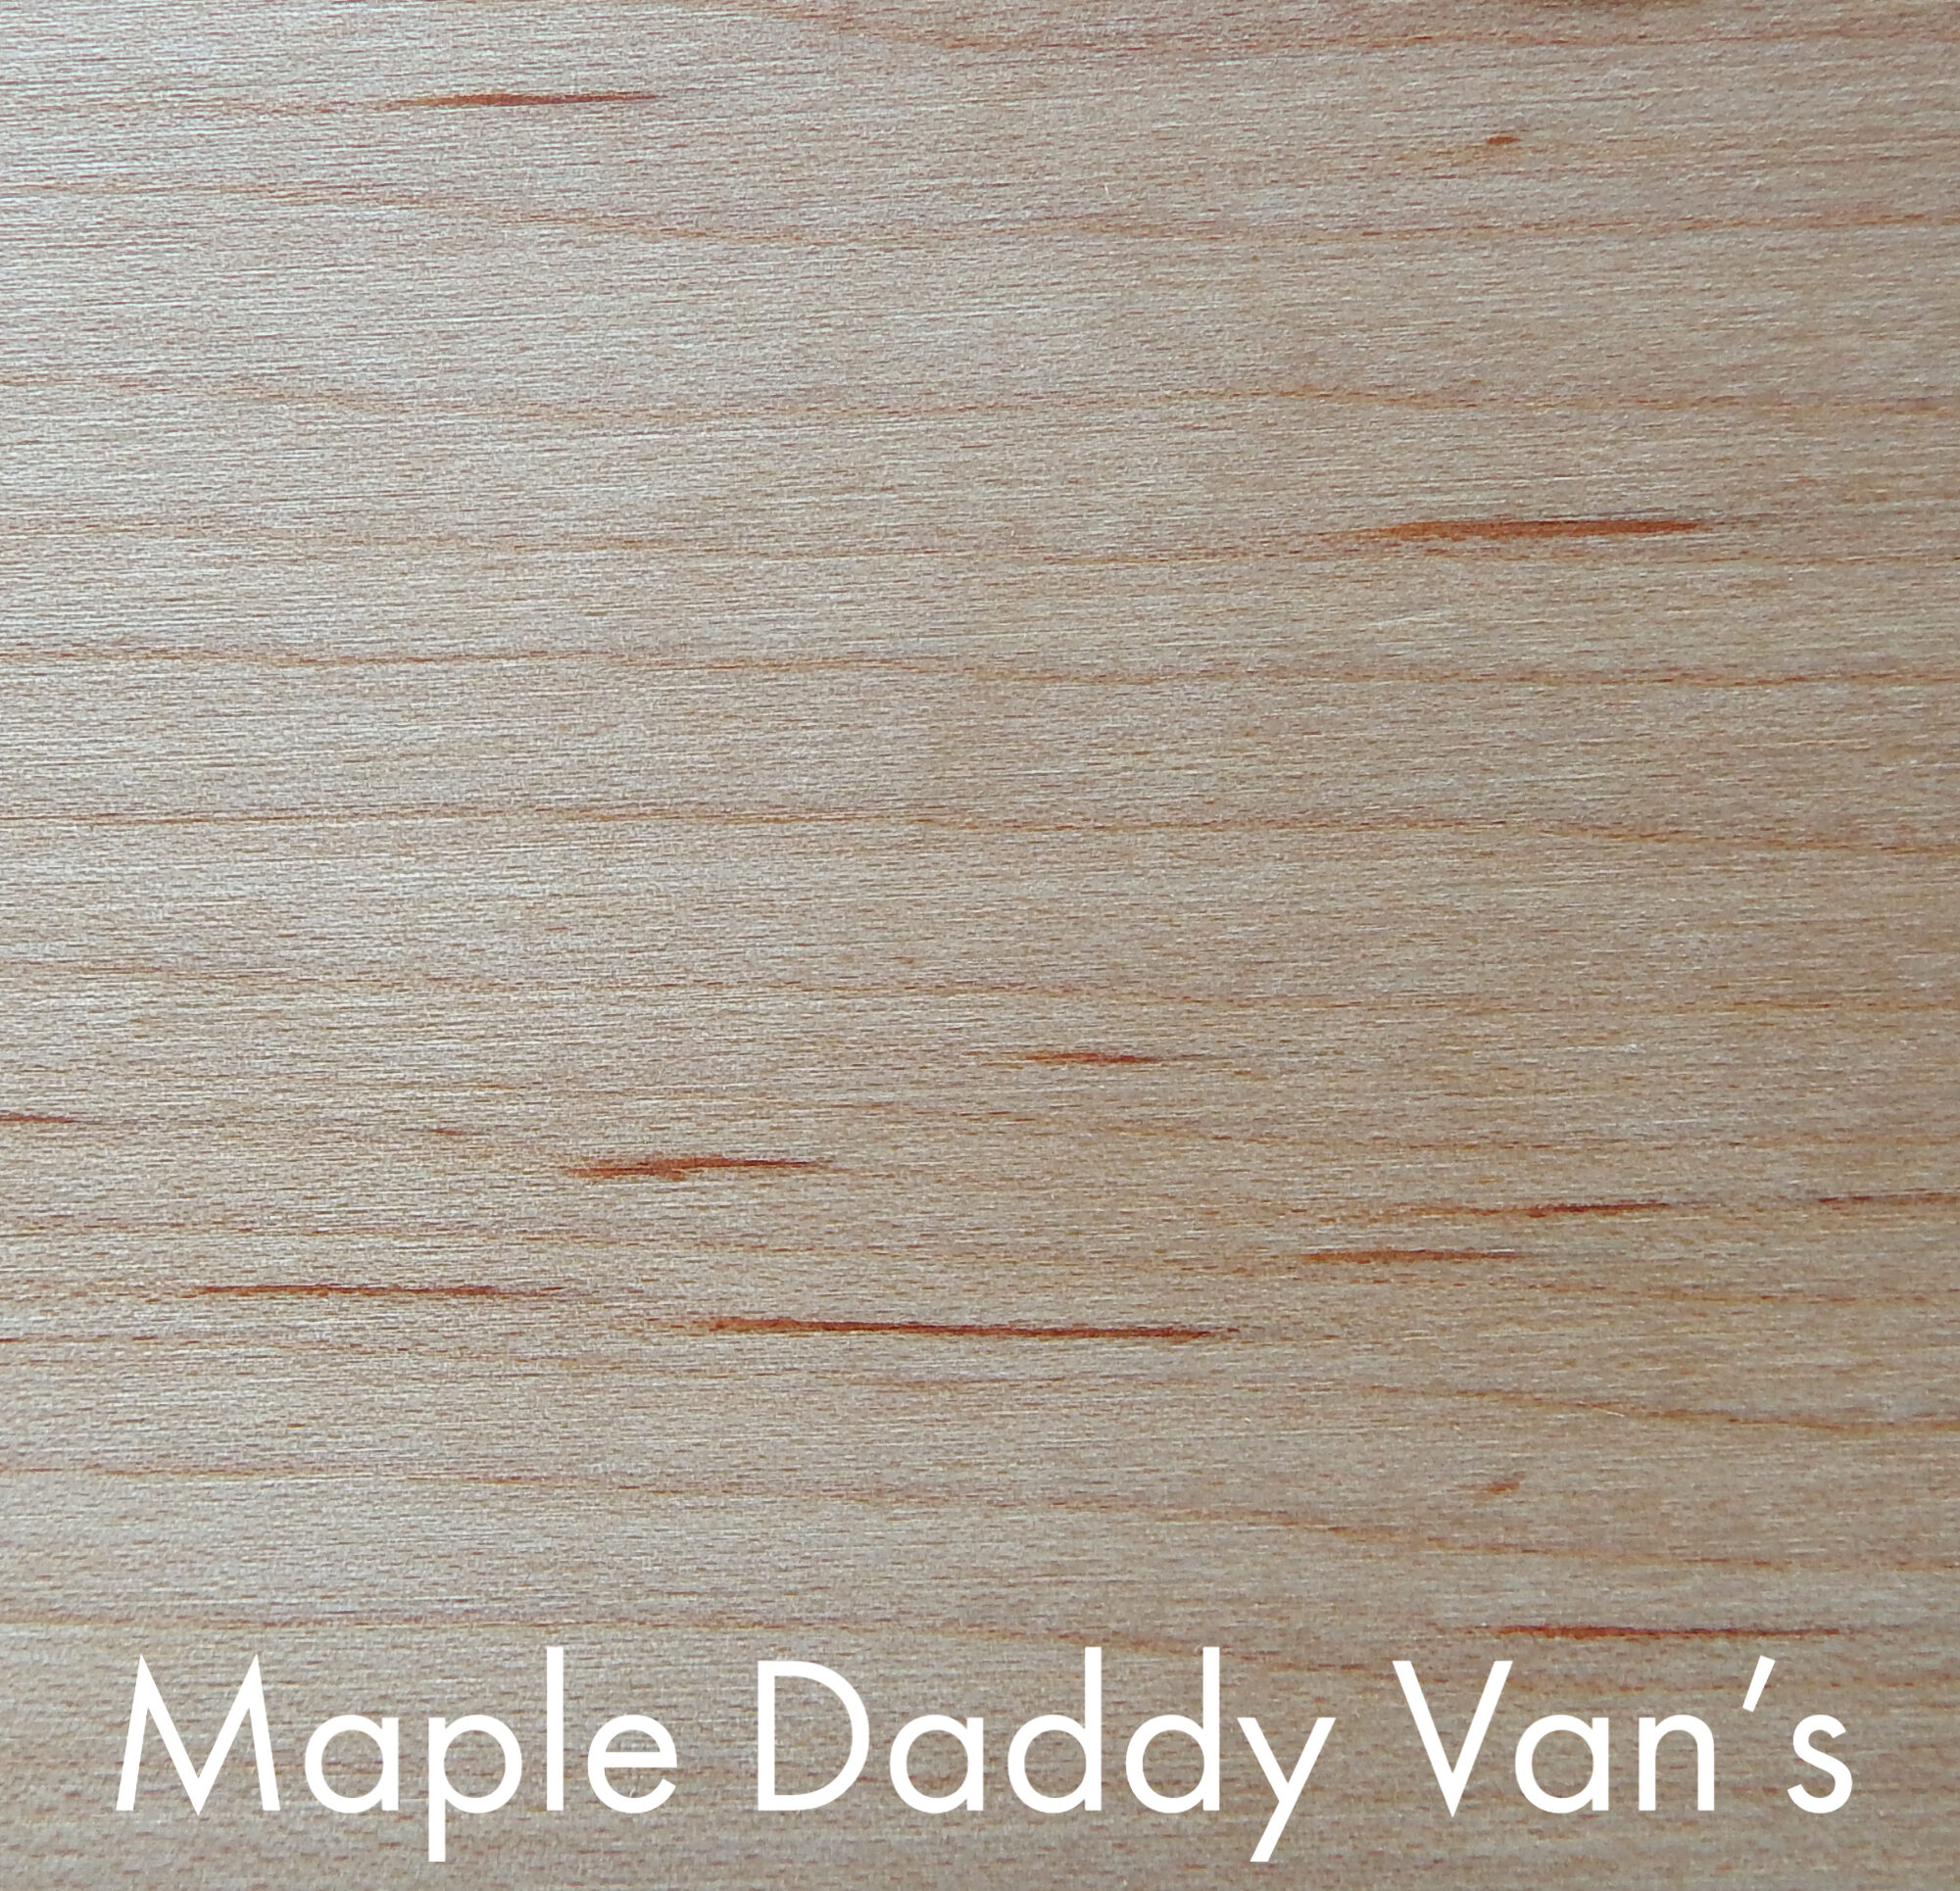 Maple Daddy Van's